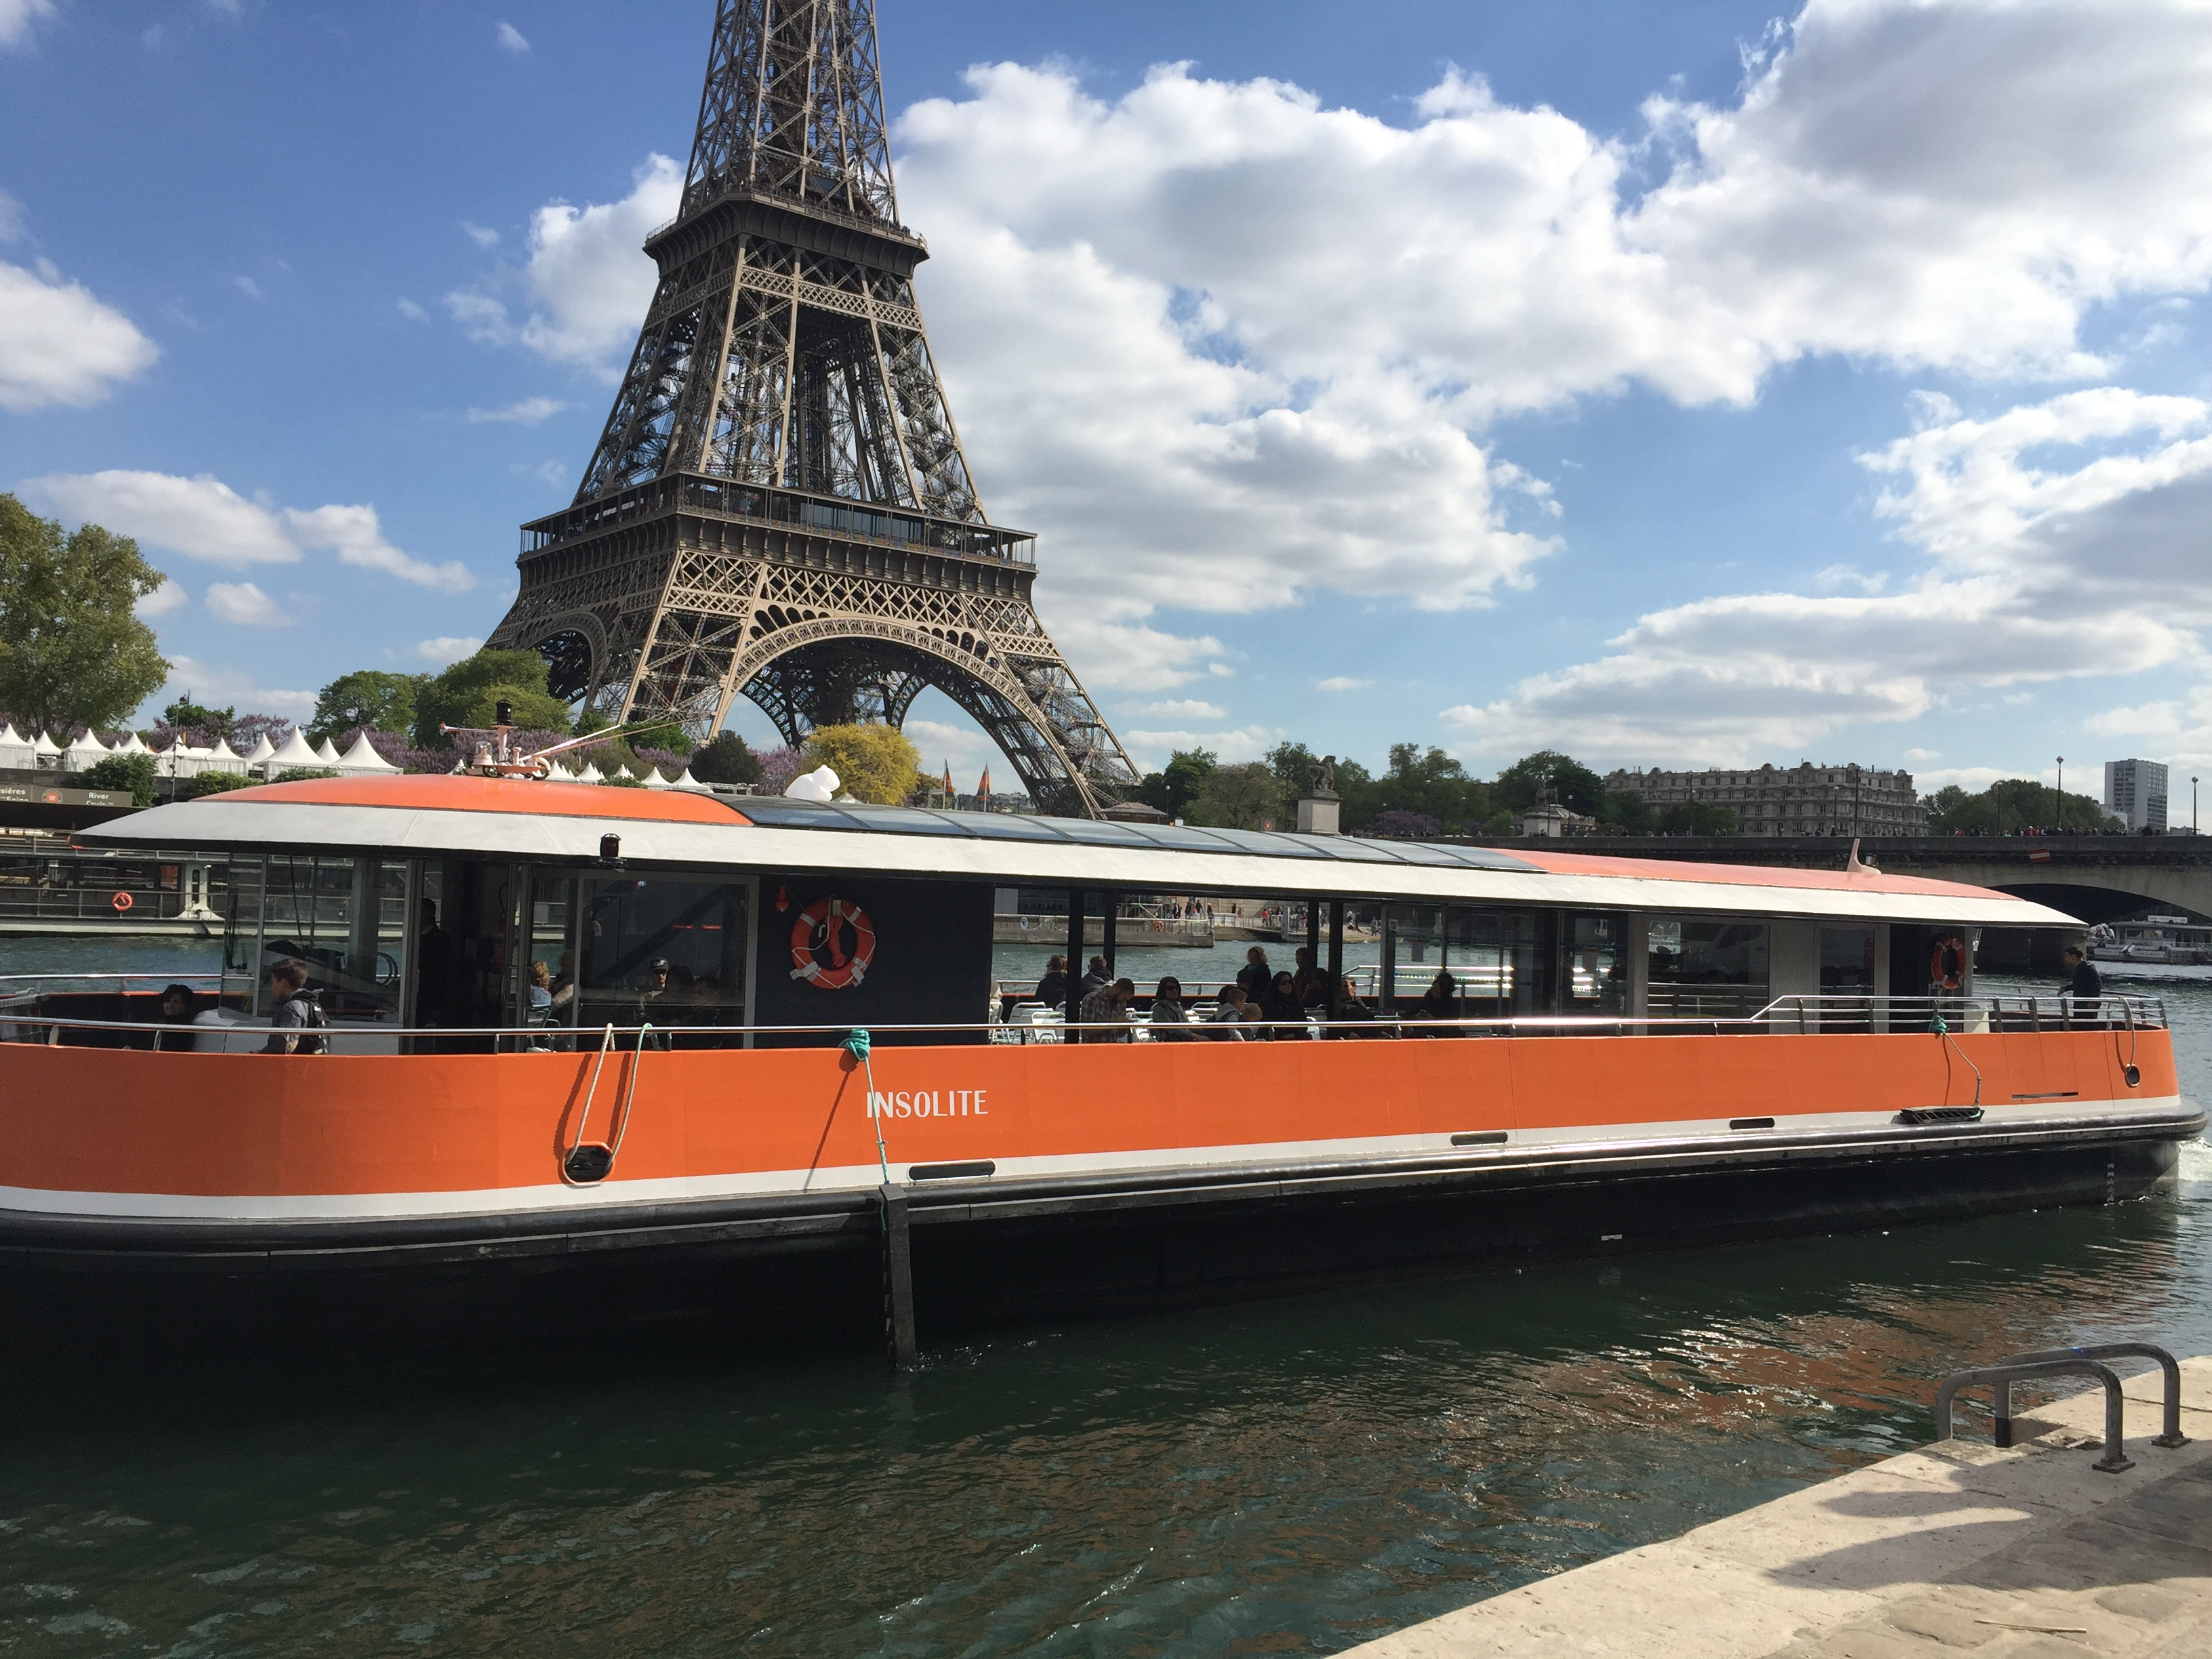 Croisiere-promenade-sightseeing-cruise-bateau- boat-visit-paris-centre-navigation-Insolite-tour-eiffel-tower